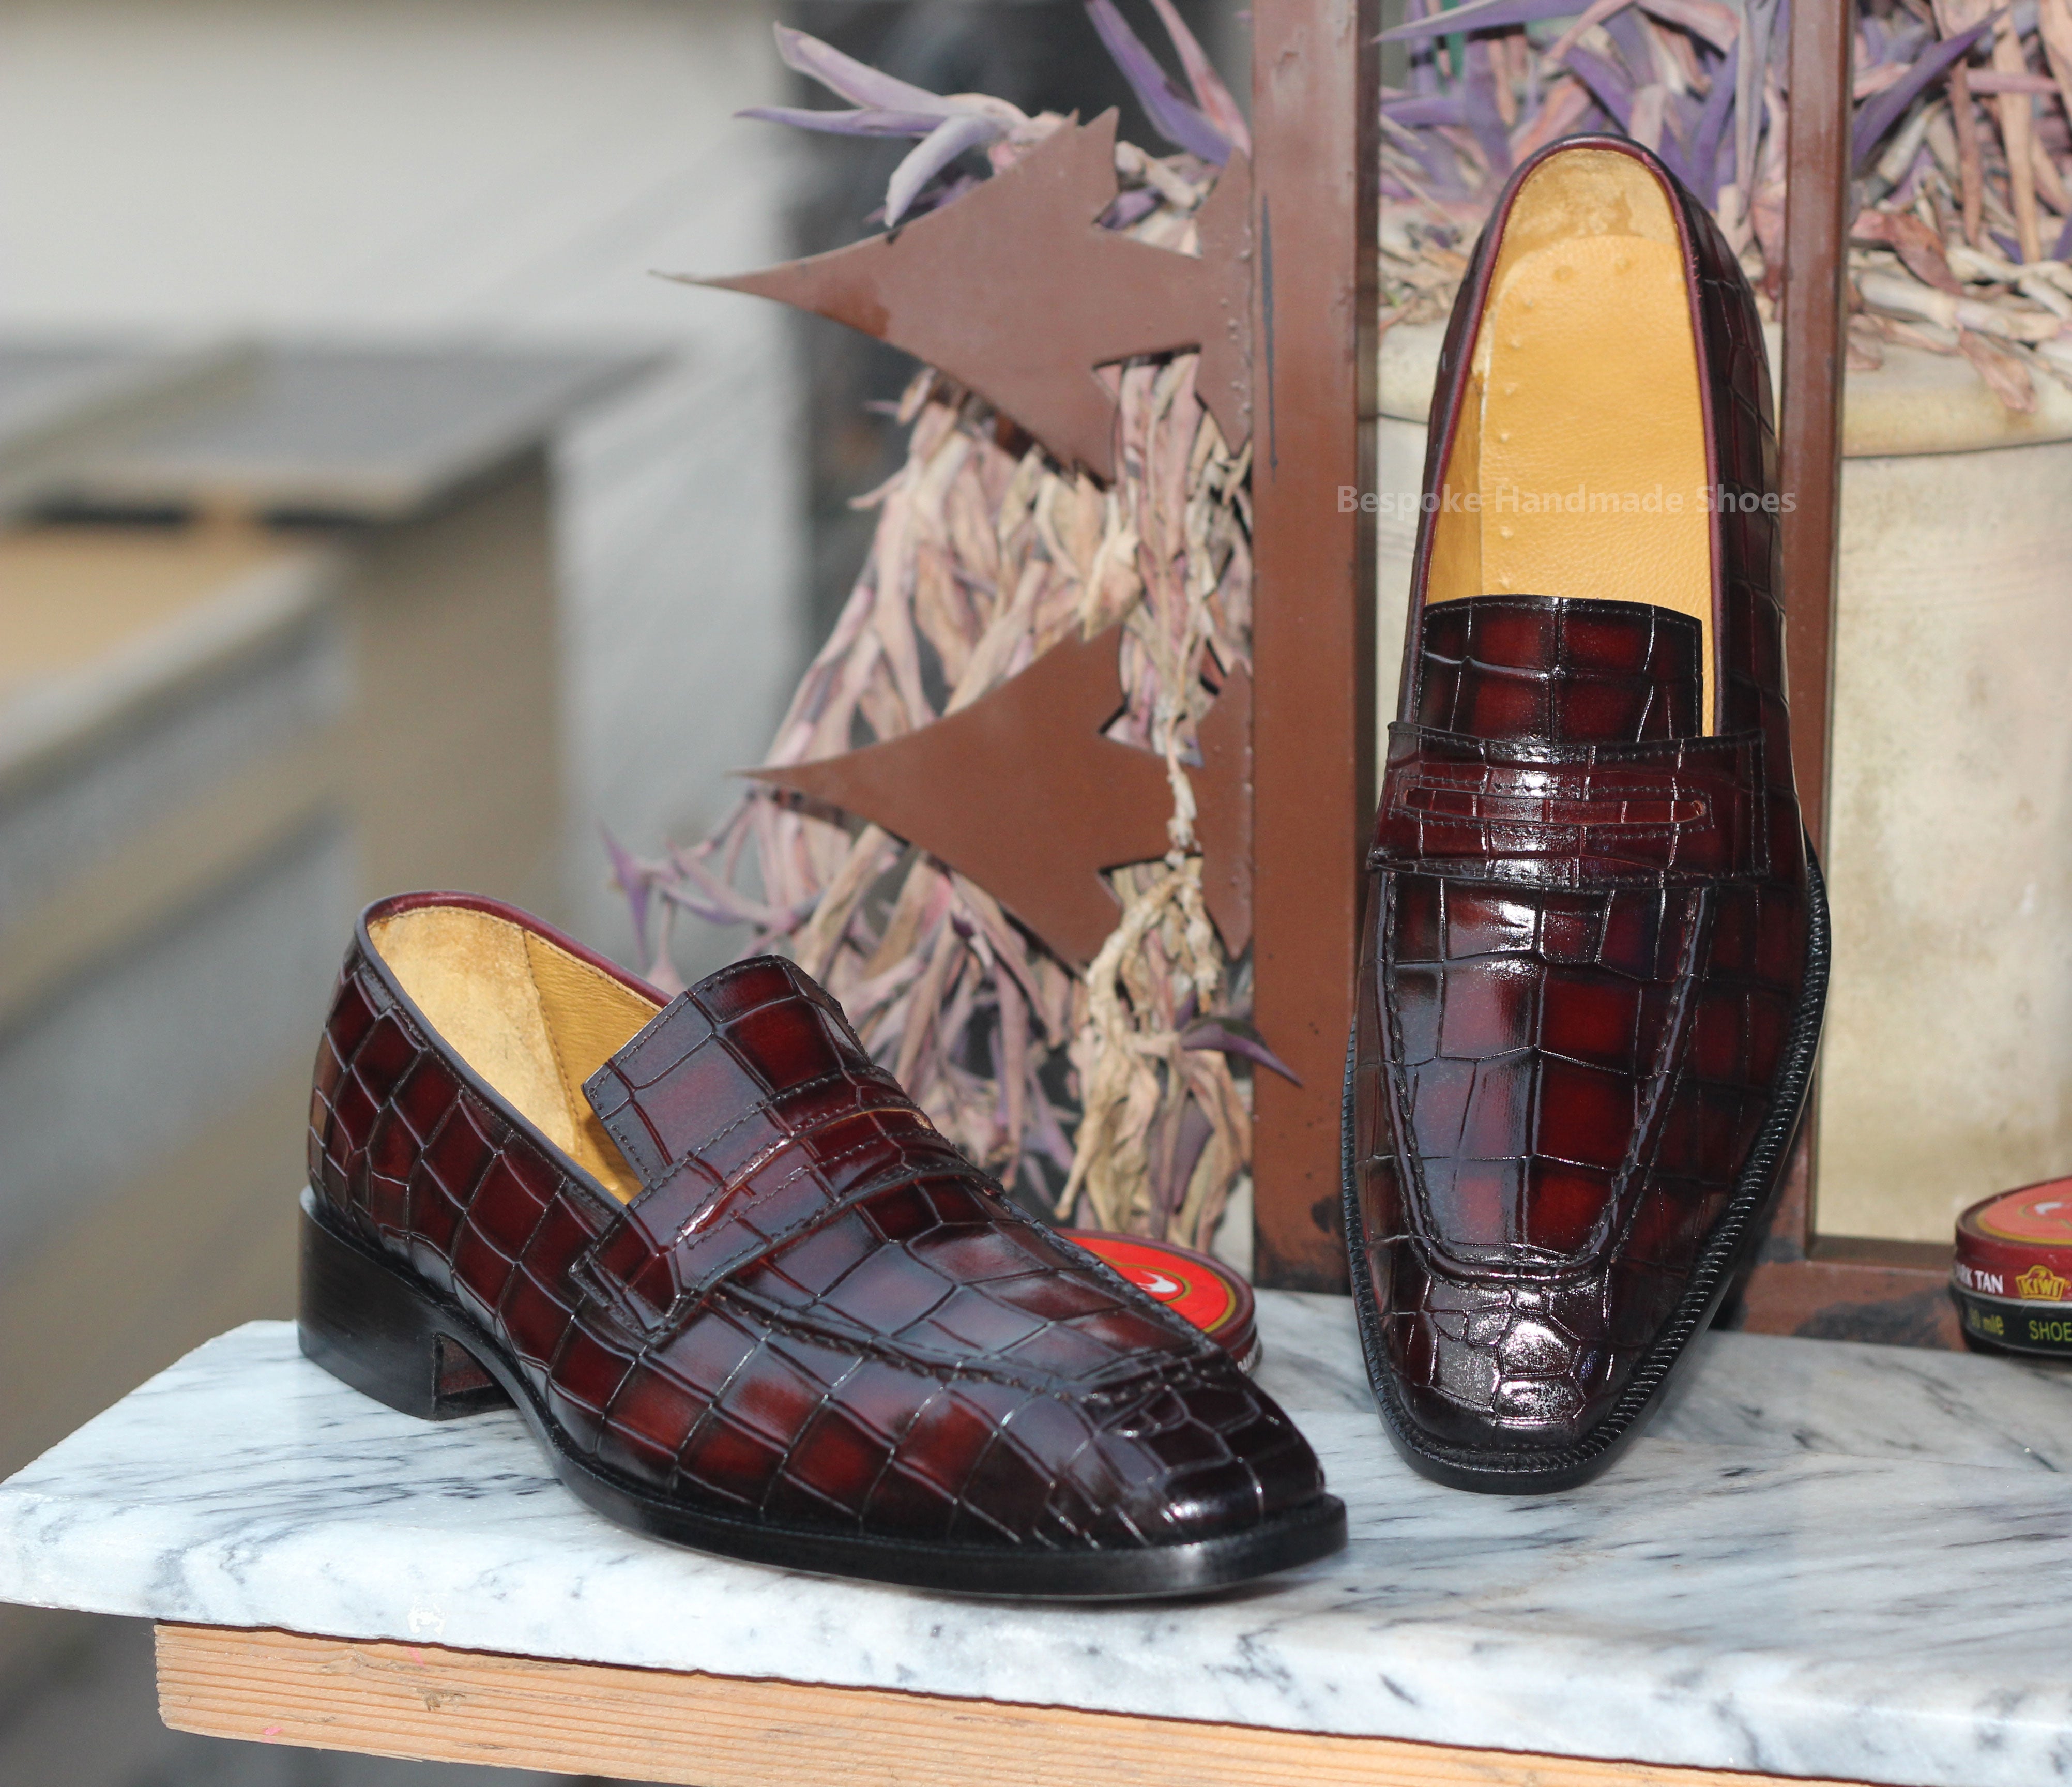 Bespoke Handmade Men's Burgundy Leather Black Shaded Slip On Loafer Casual Shoes Men